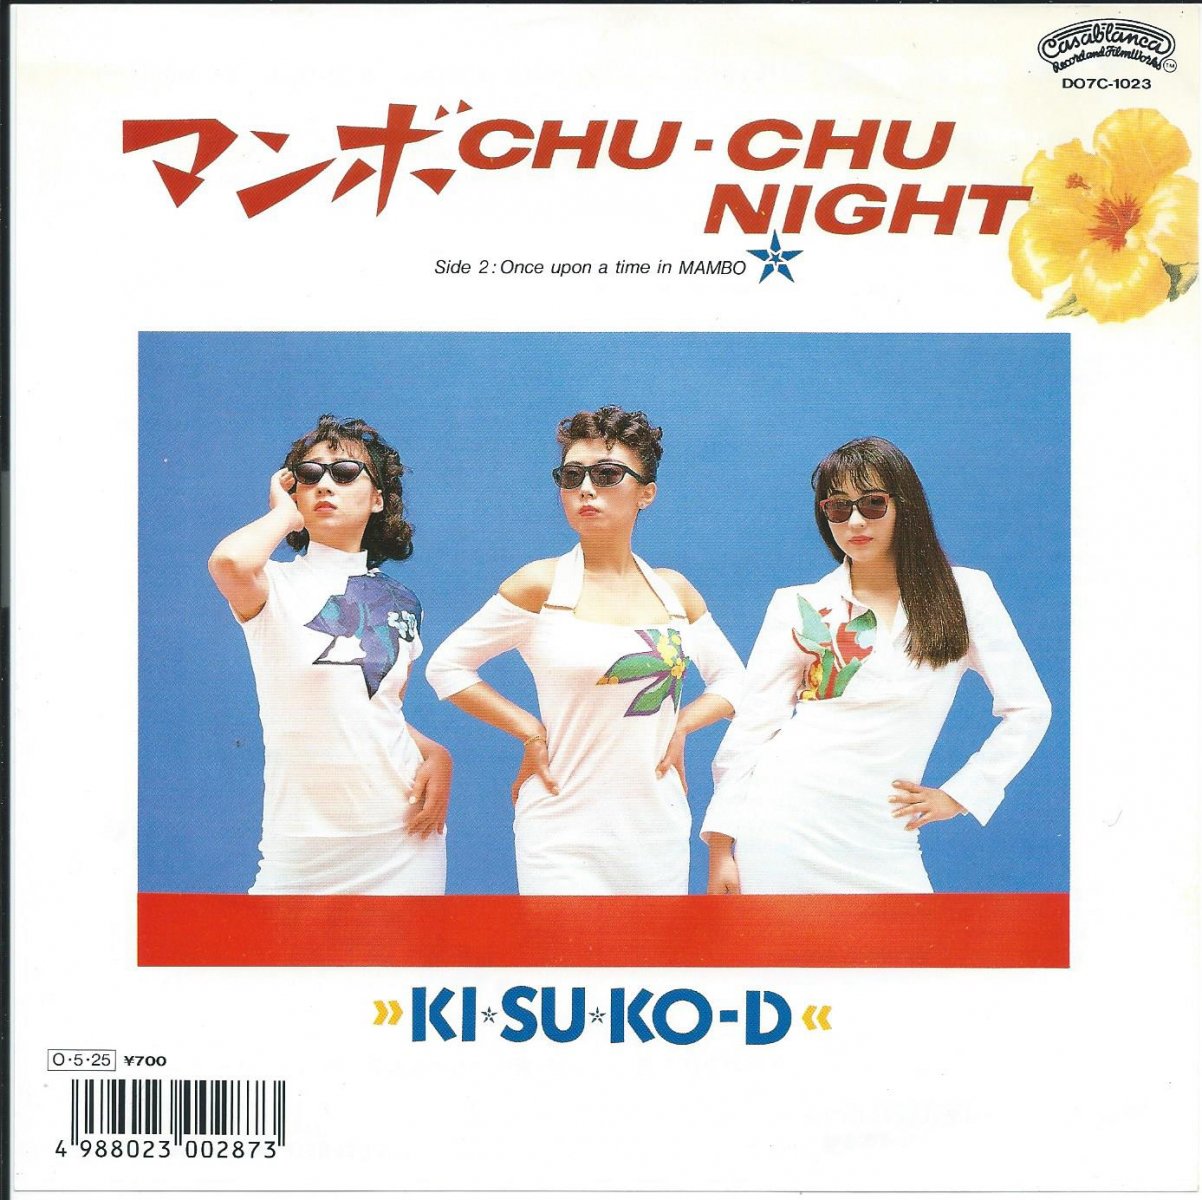 KI☆SU☆KO-D / マンボ CHU-CHU NIGHT / ONCE UPON A TIME IN MAMBO (7